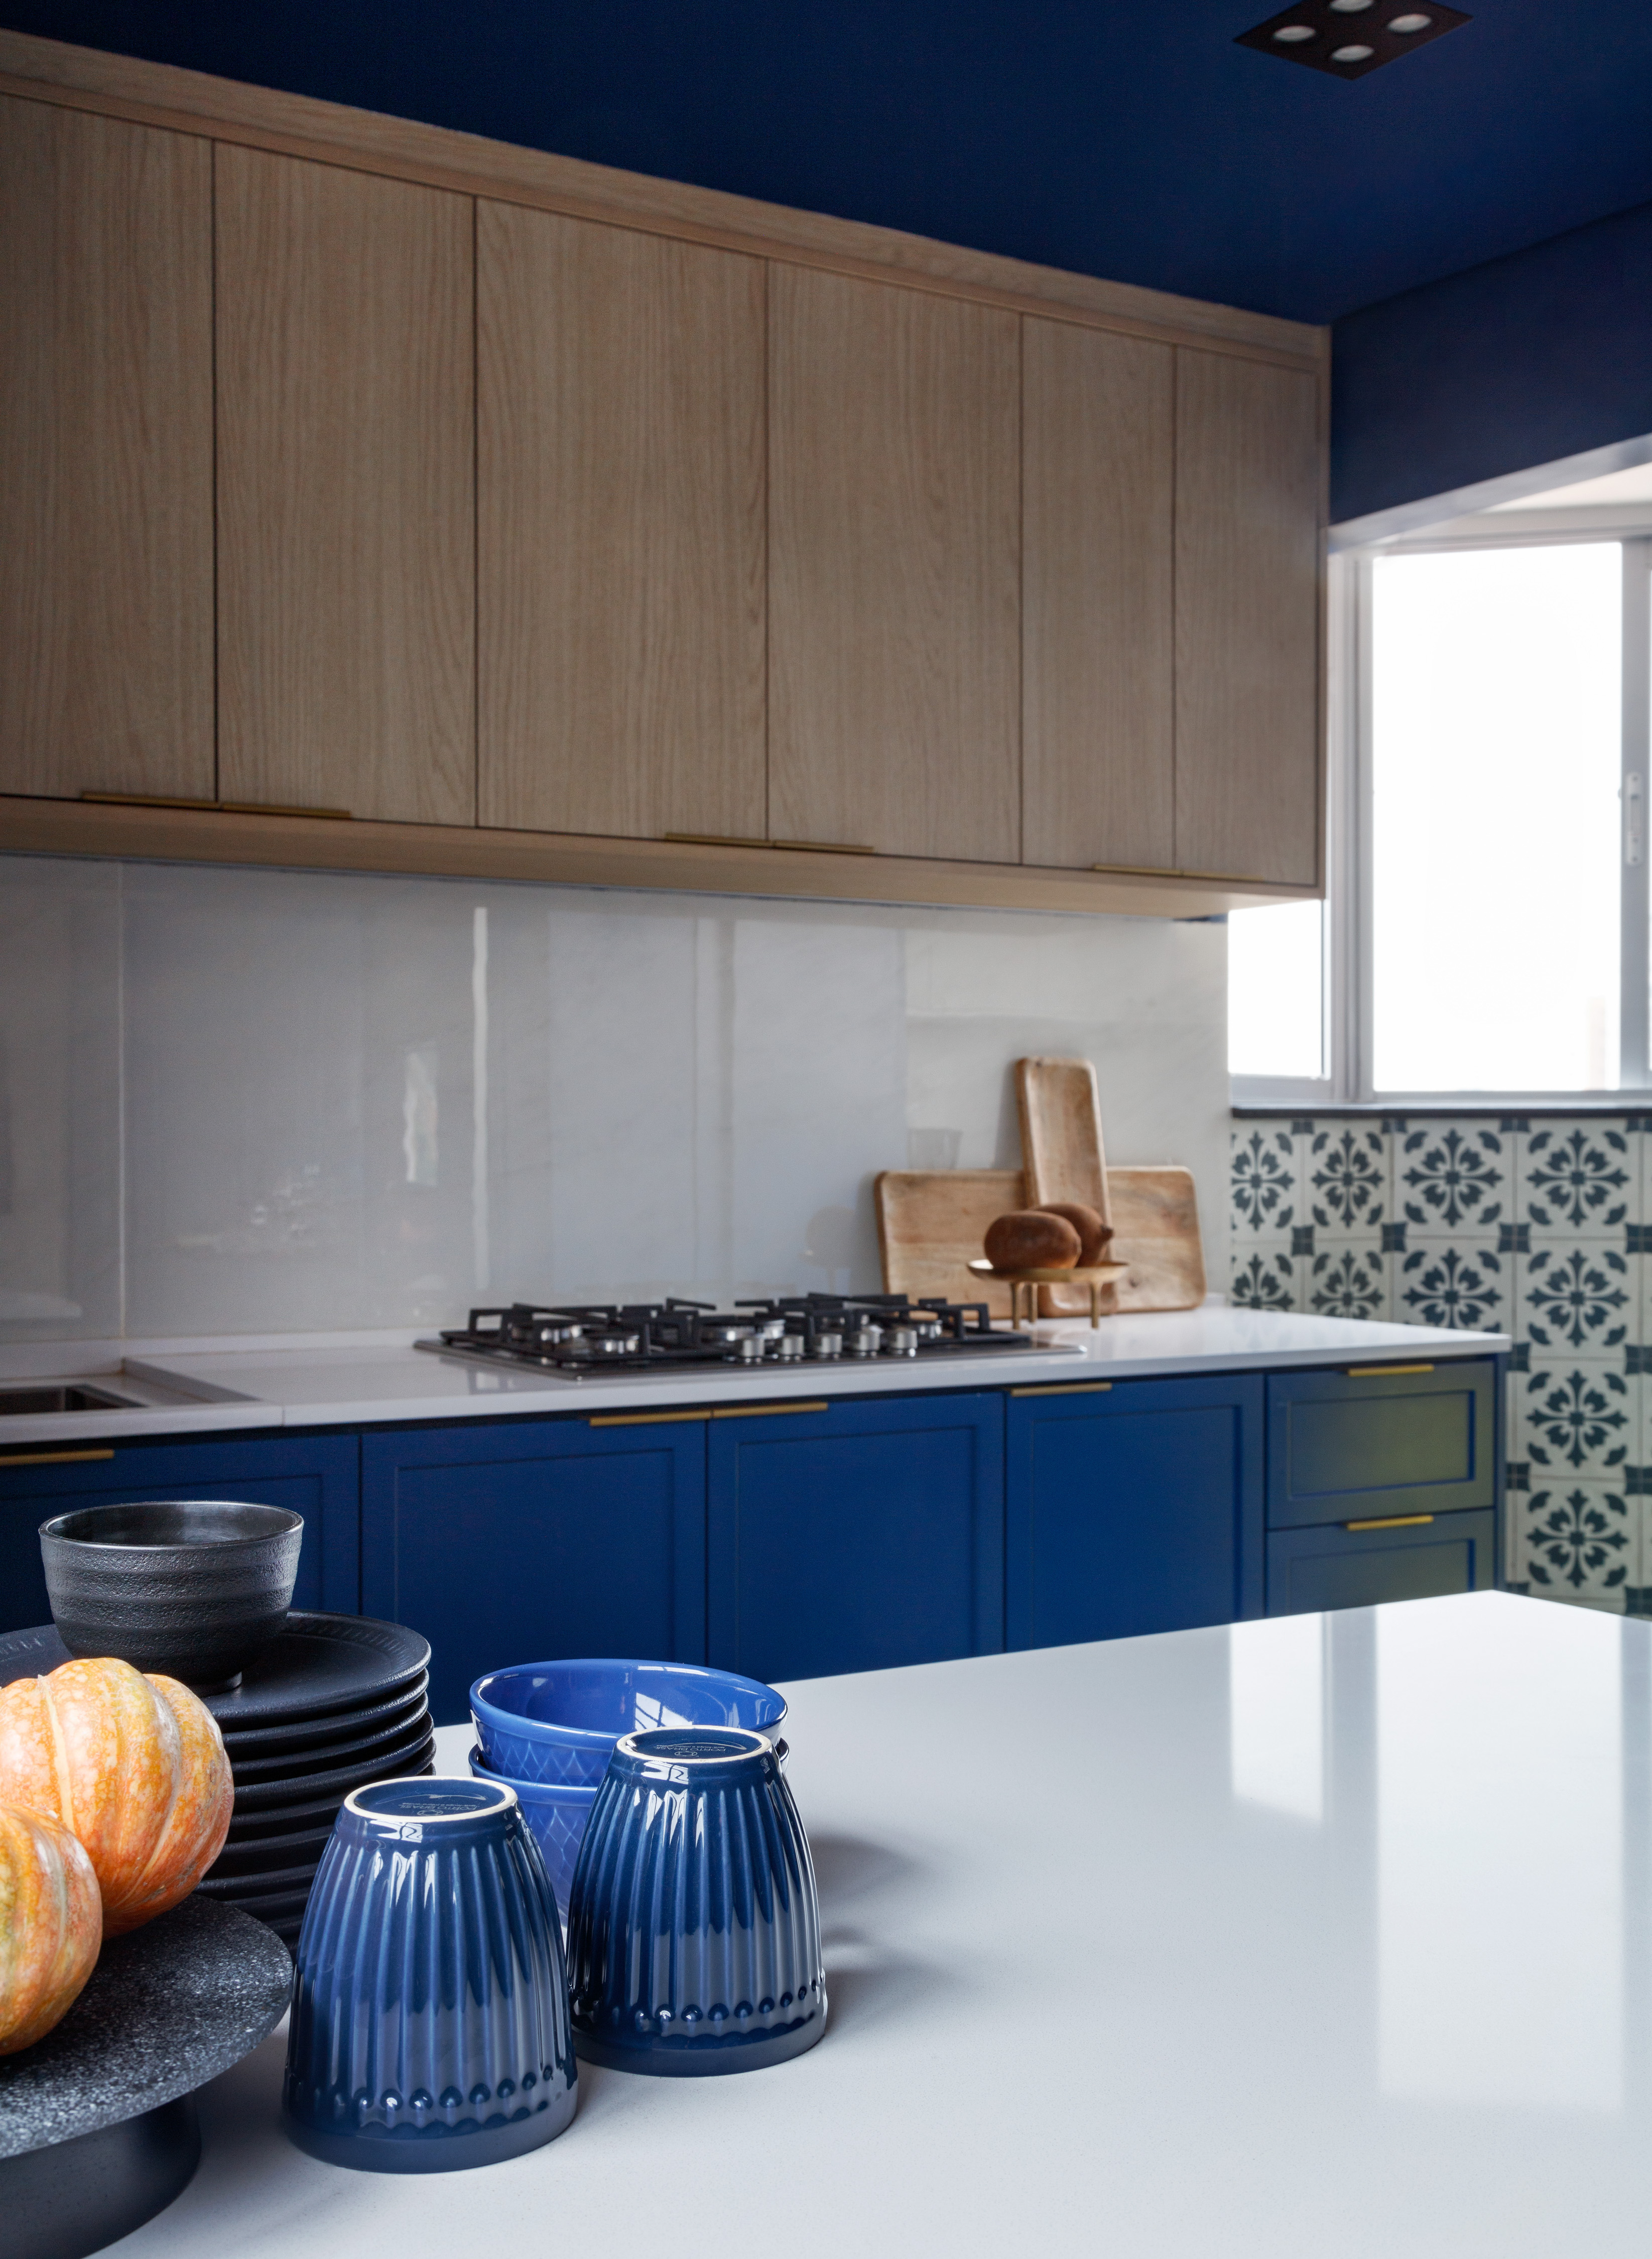 Rústico, retrô e contemporâneo: apê de 72 m² ganha vida com cozinha azul. Projeto de Ricardo Abreu. Na foto, cozinha com ilha e marcenaria azul.